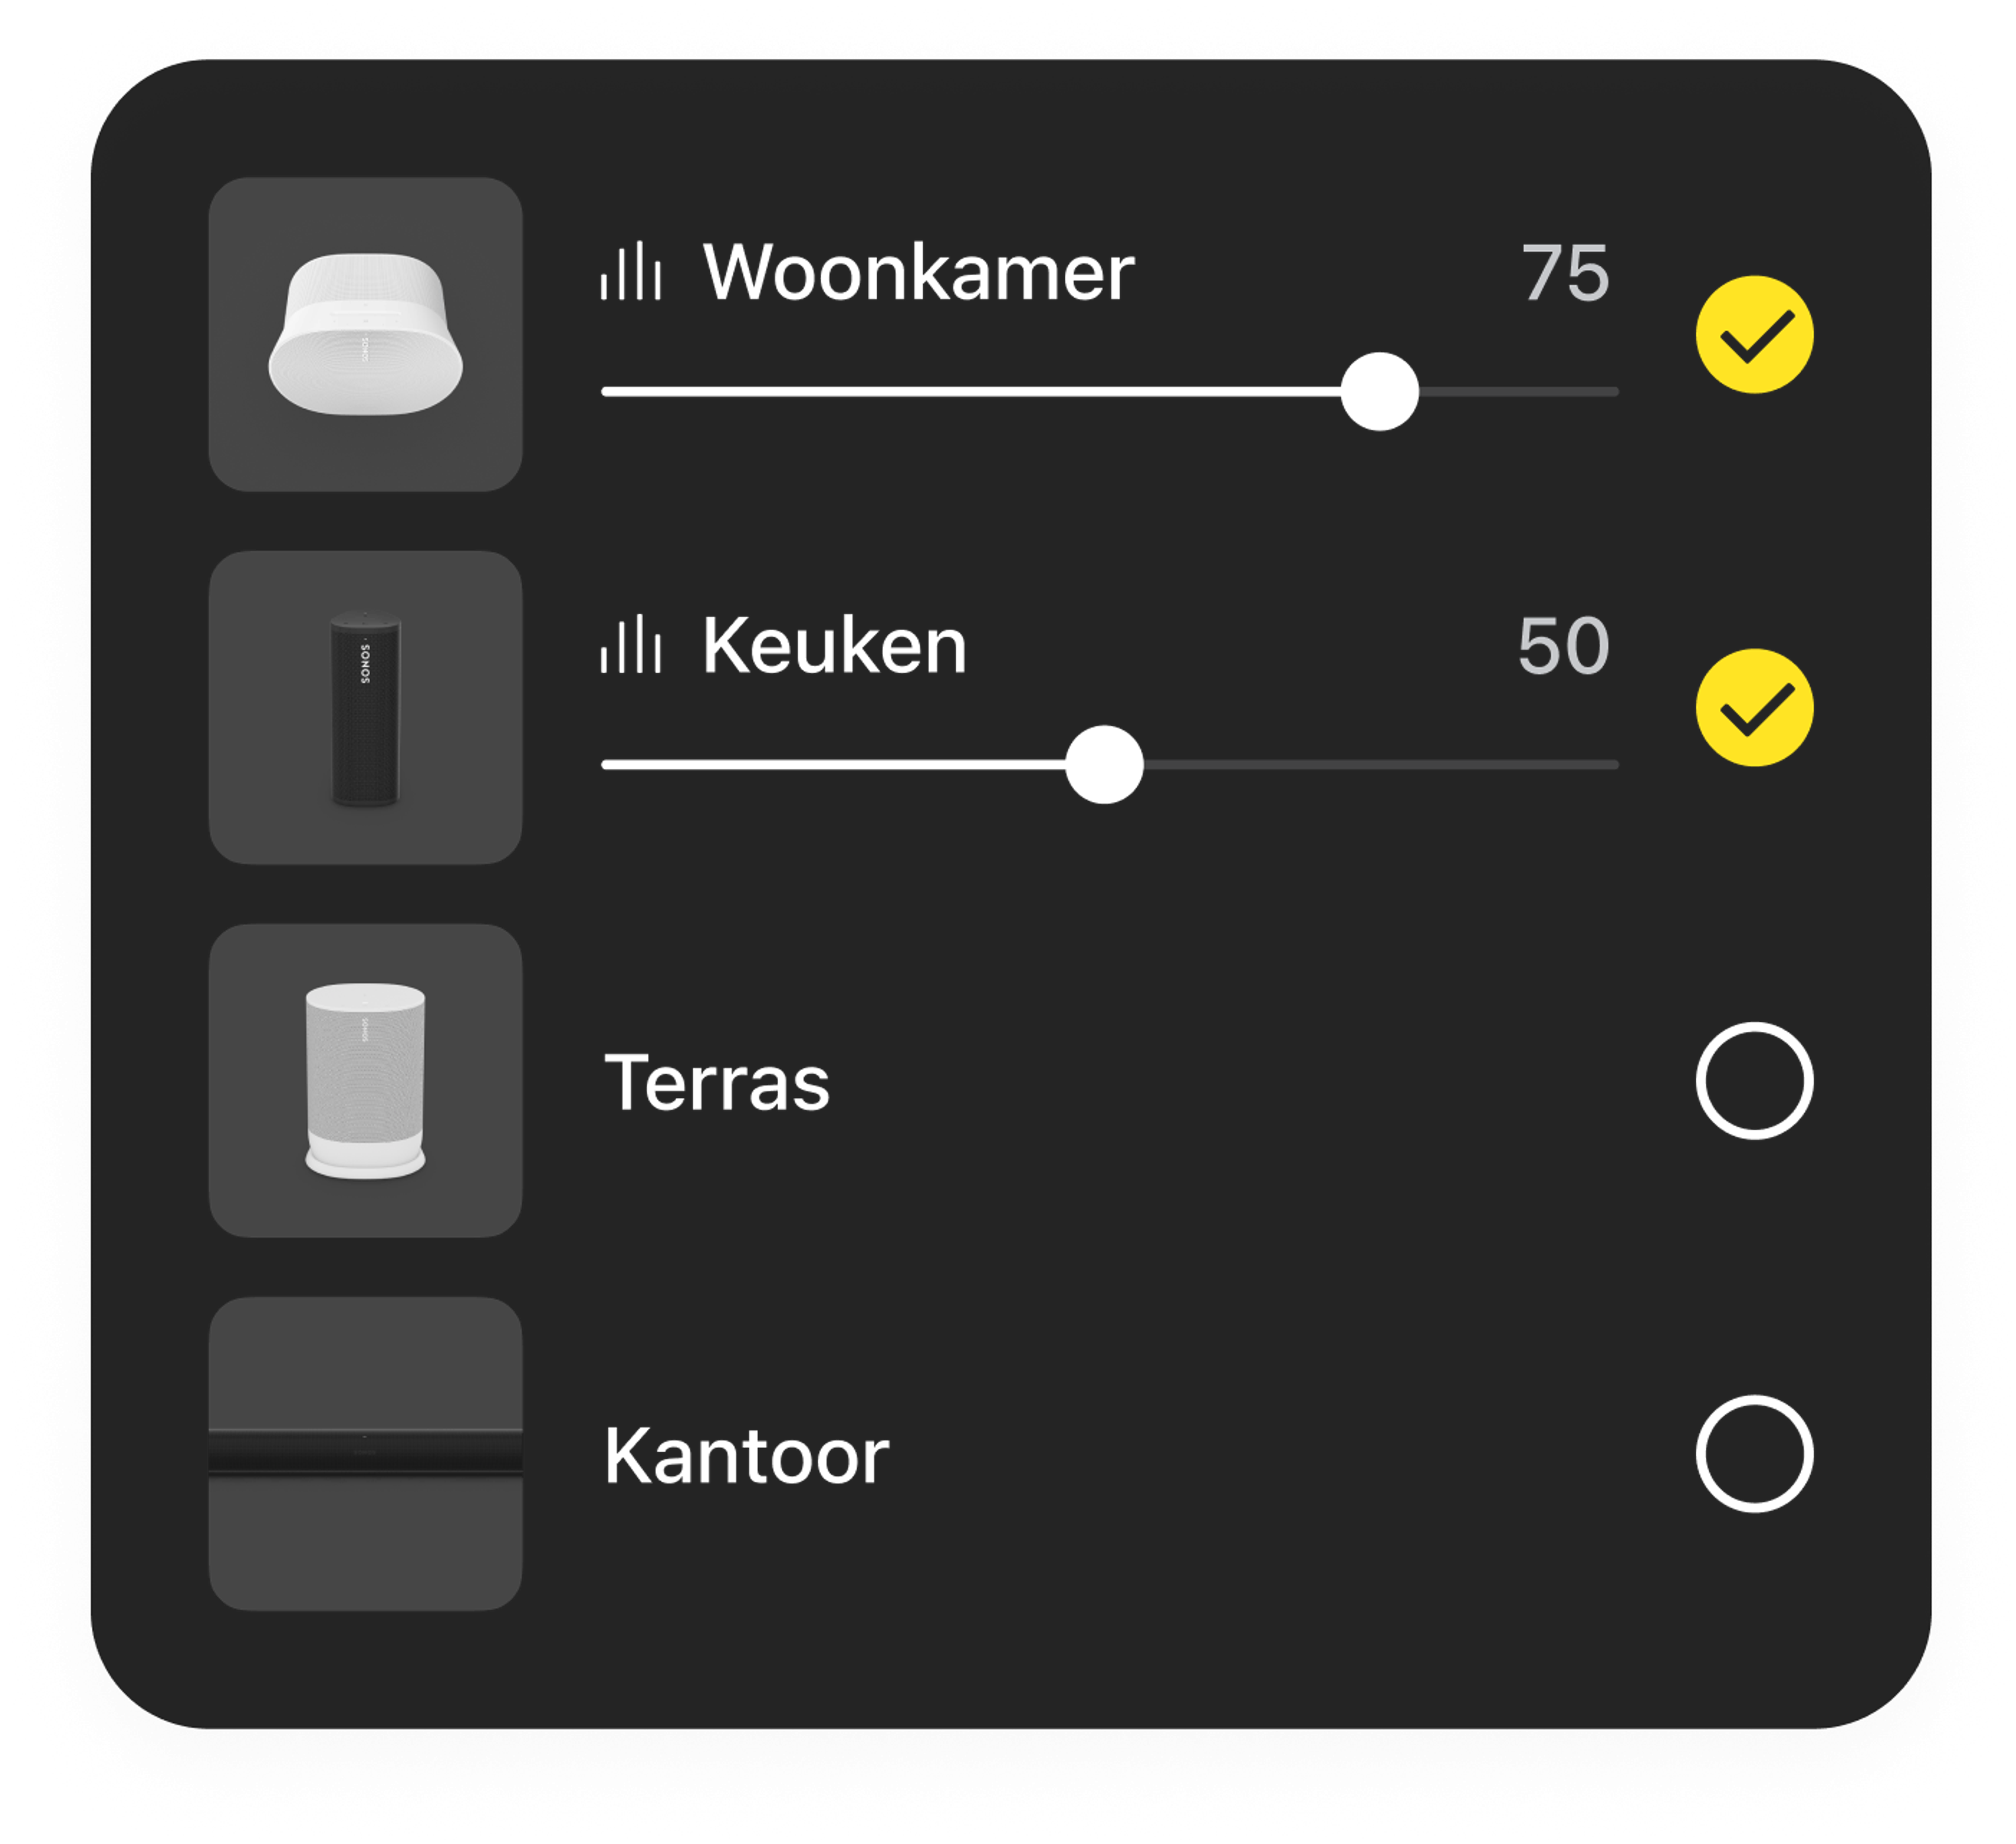 Voorbeeld van de volumeregeling voor een kamer in de Sonos-app